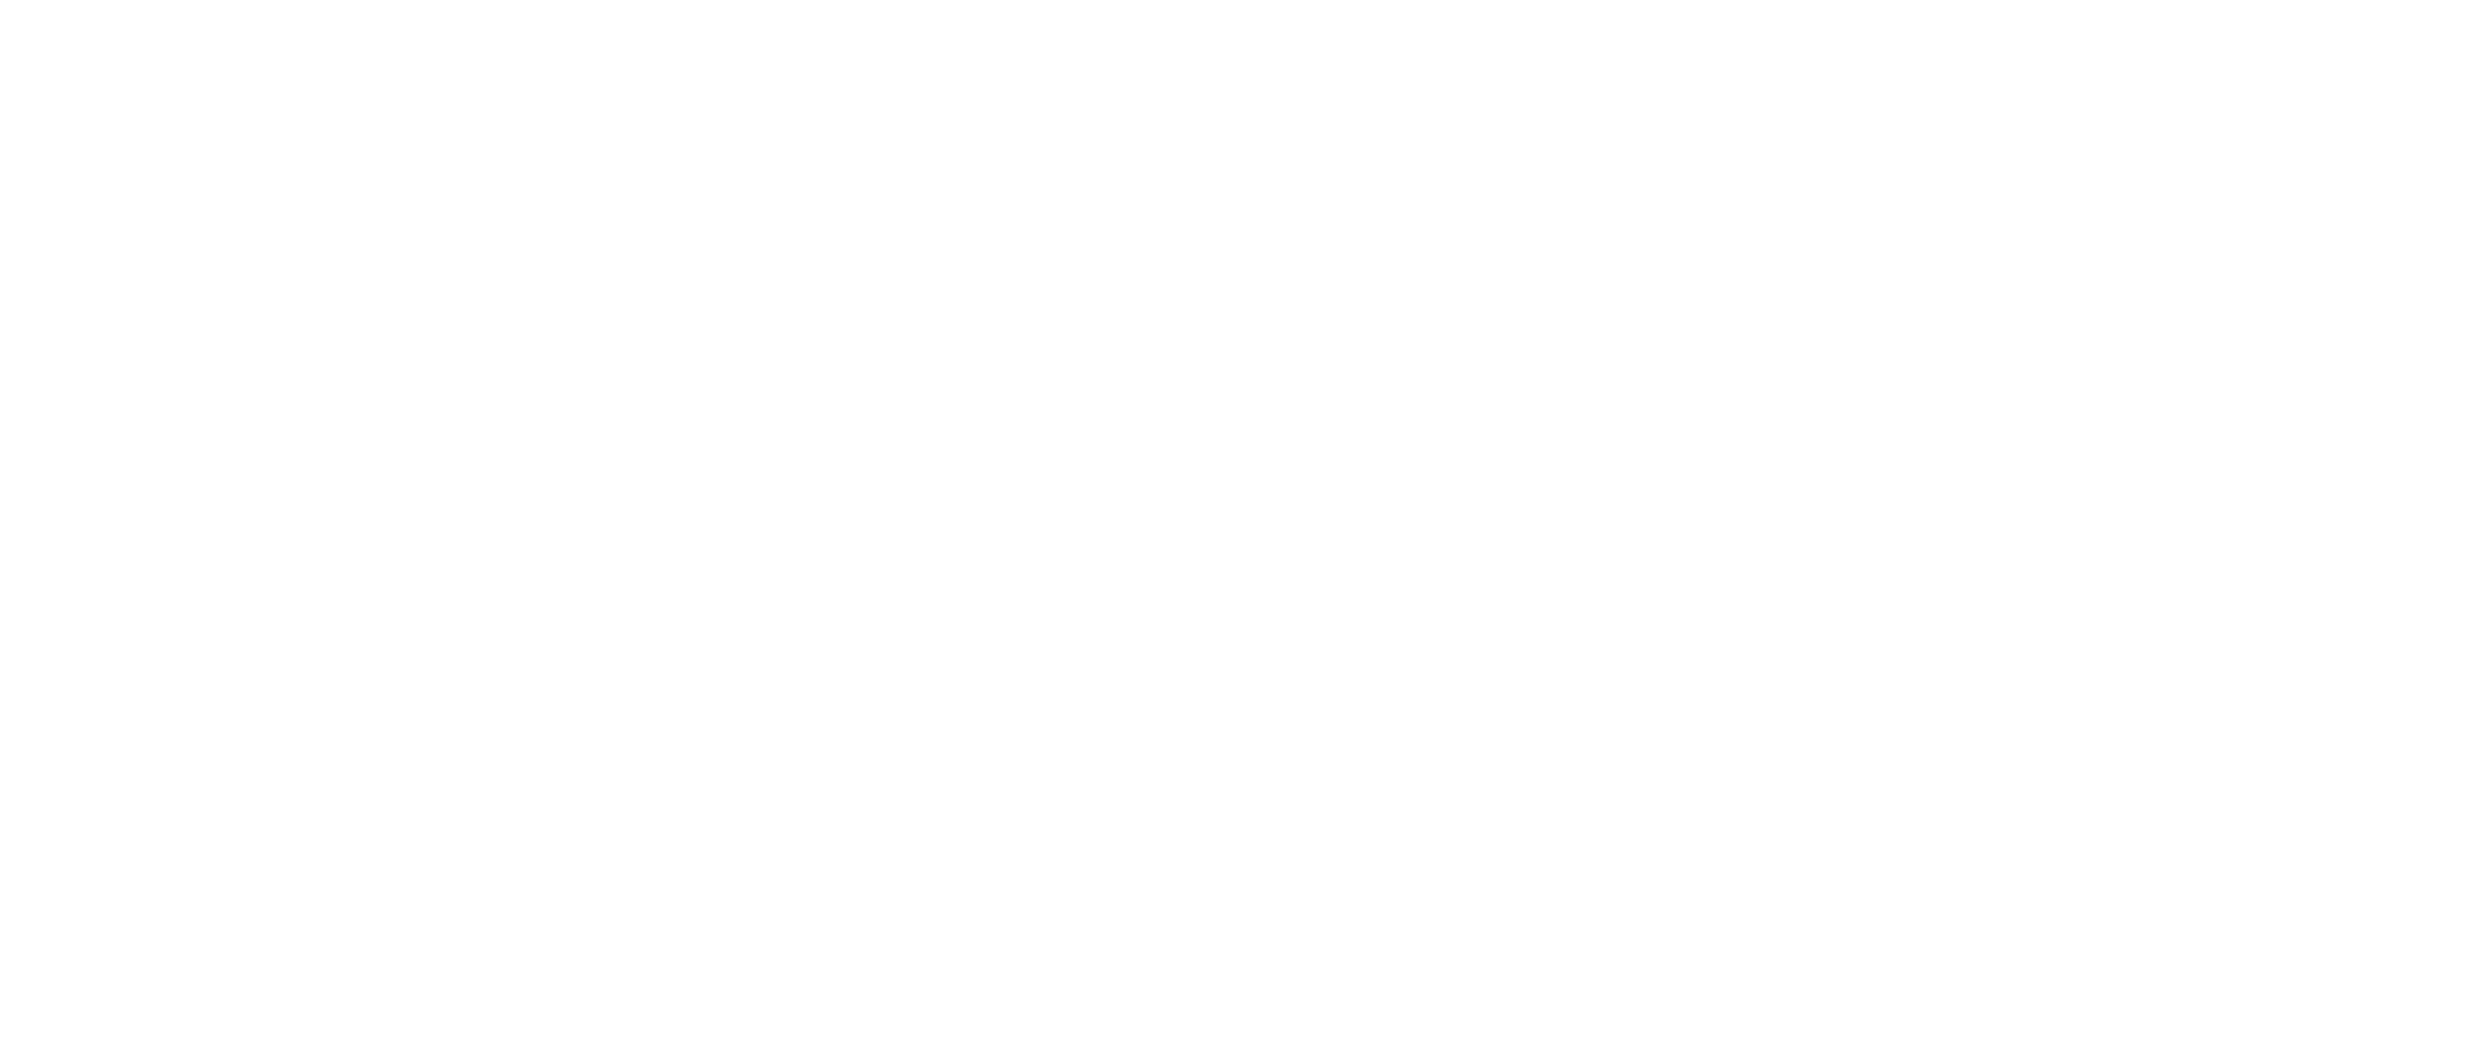 BIO Logo Horizontal White Large.png